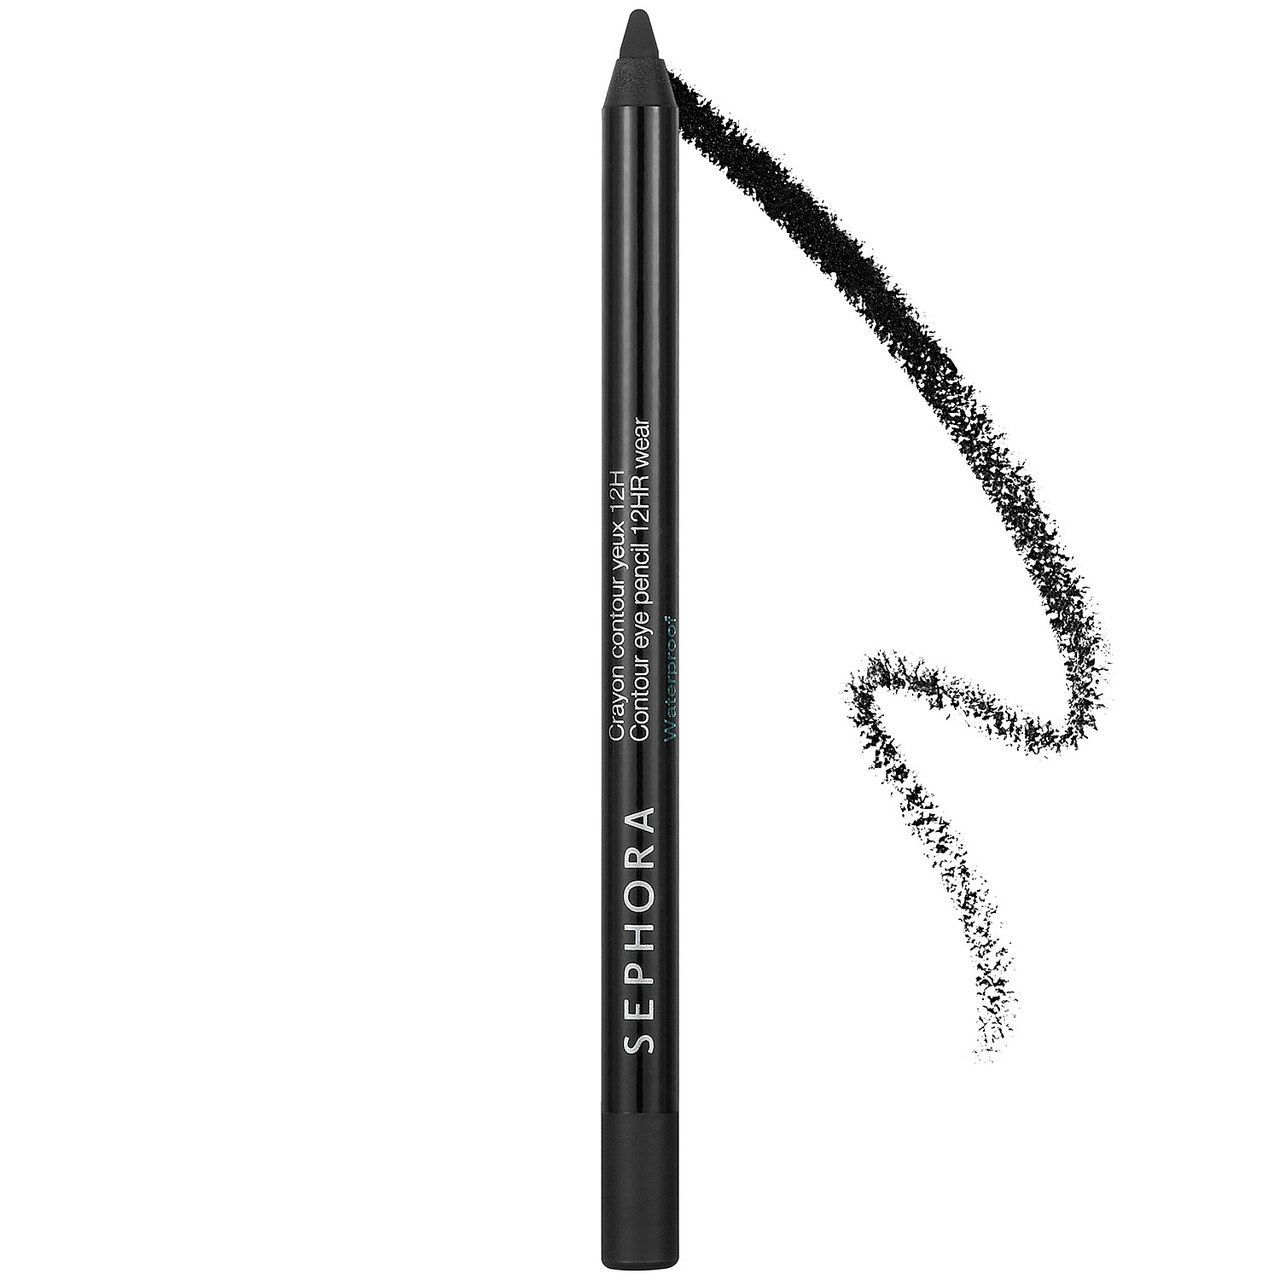  Chì kẻ mắt Sephora Contour eye pencil 12hr wear Black Lace (Đen huyền bí) 